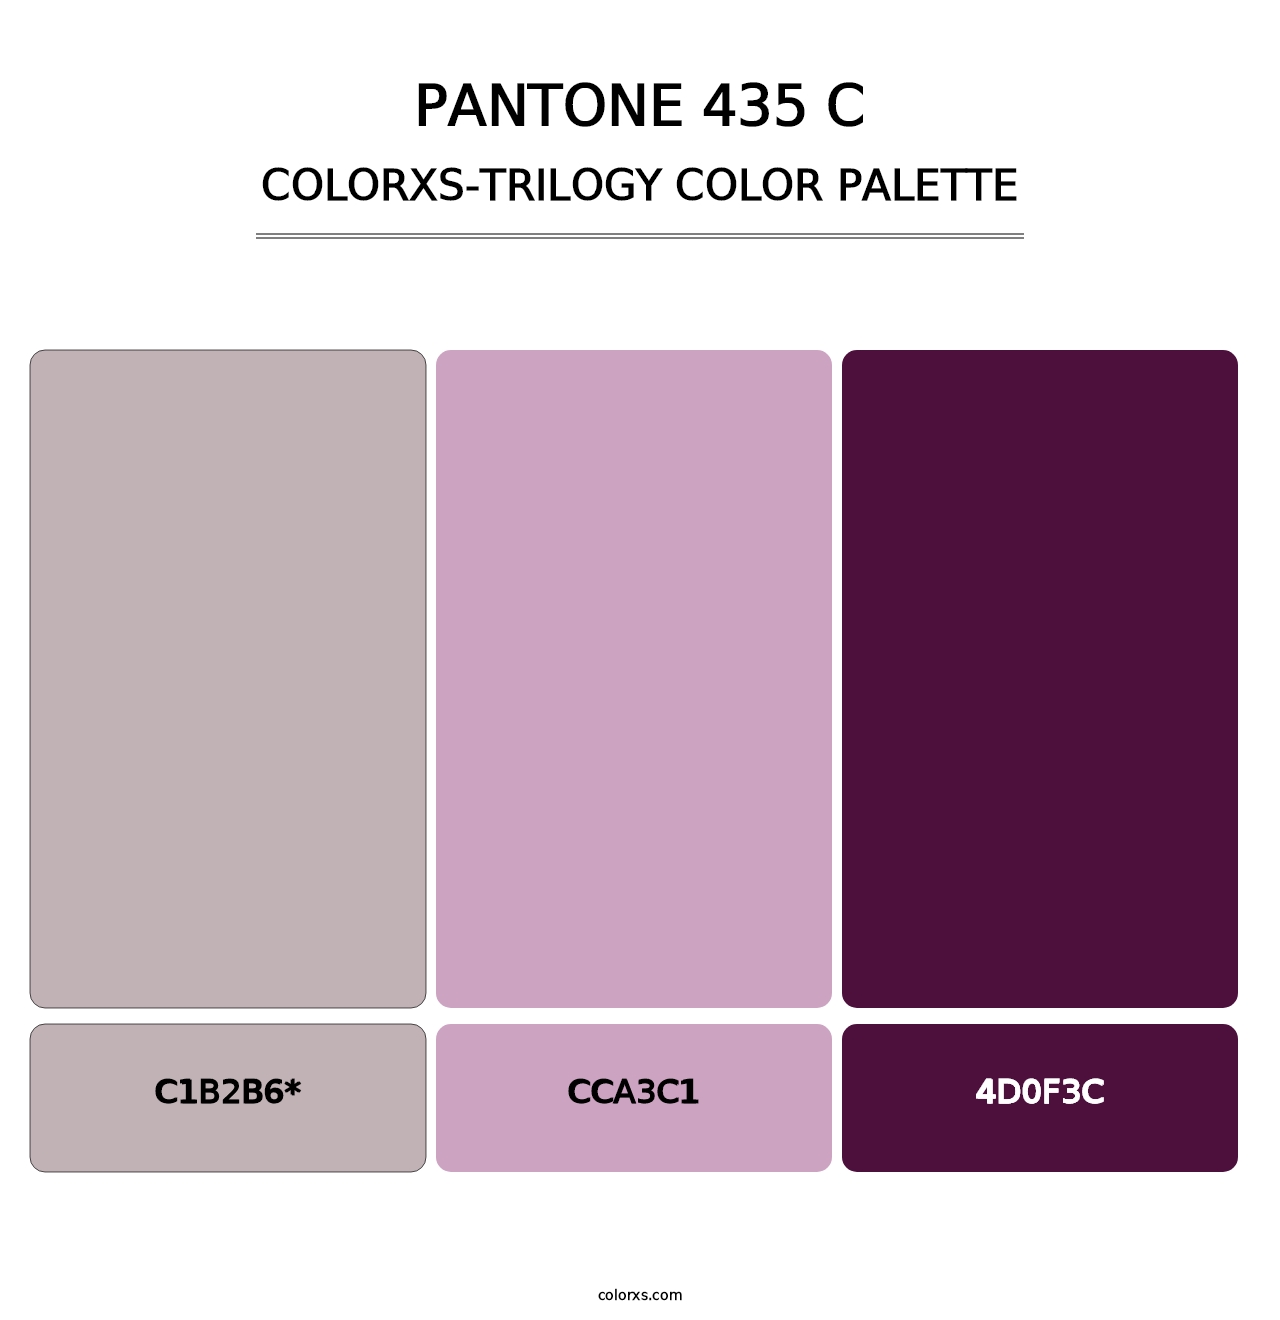 PANTONE 435 C - Colorxs Trilogy Palette